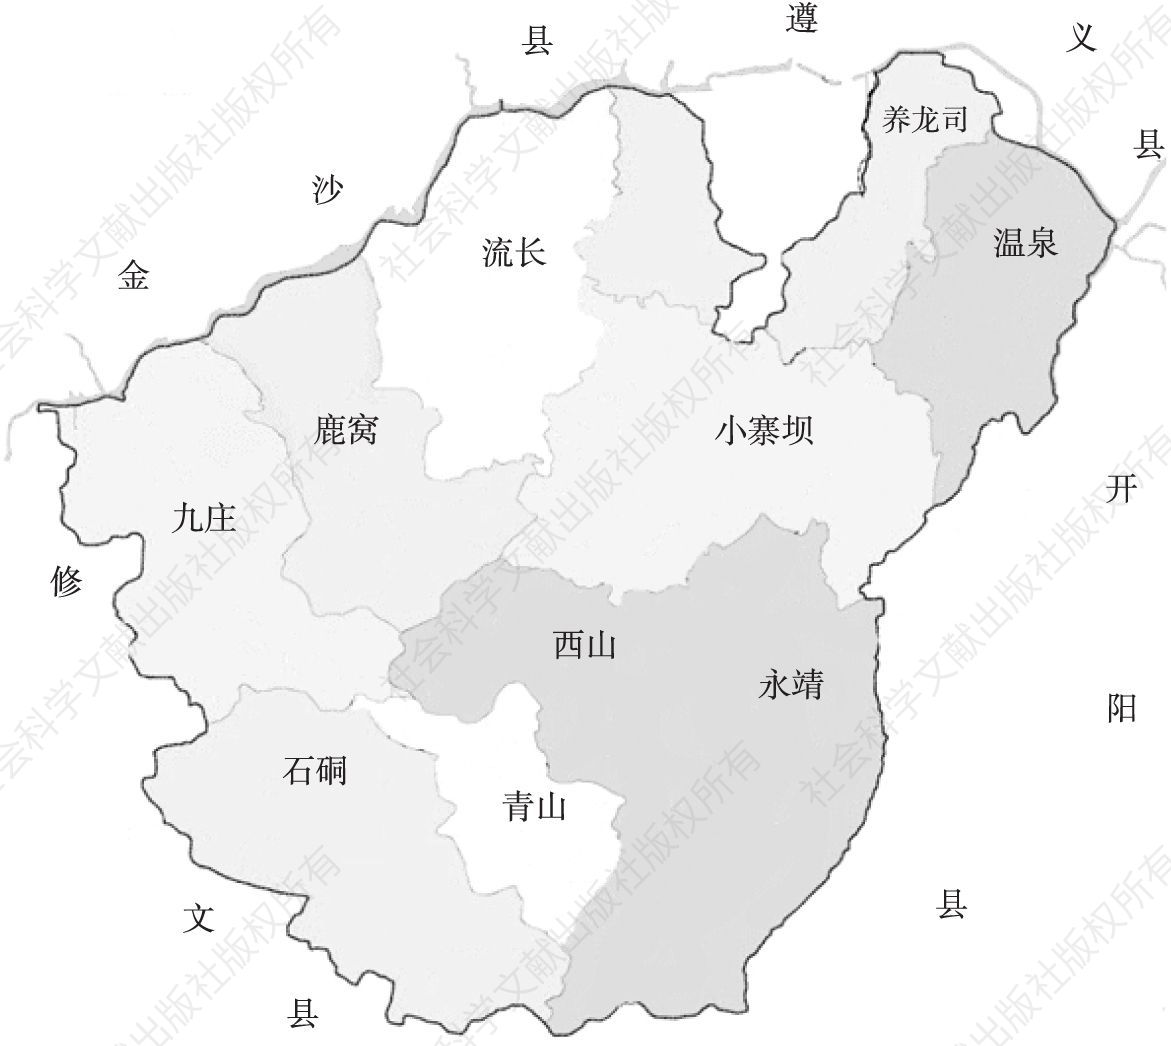 图1 息烽县行政规划示意